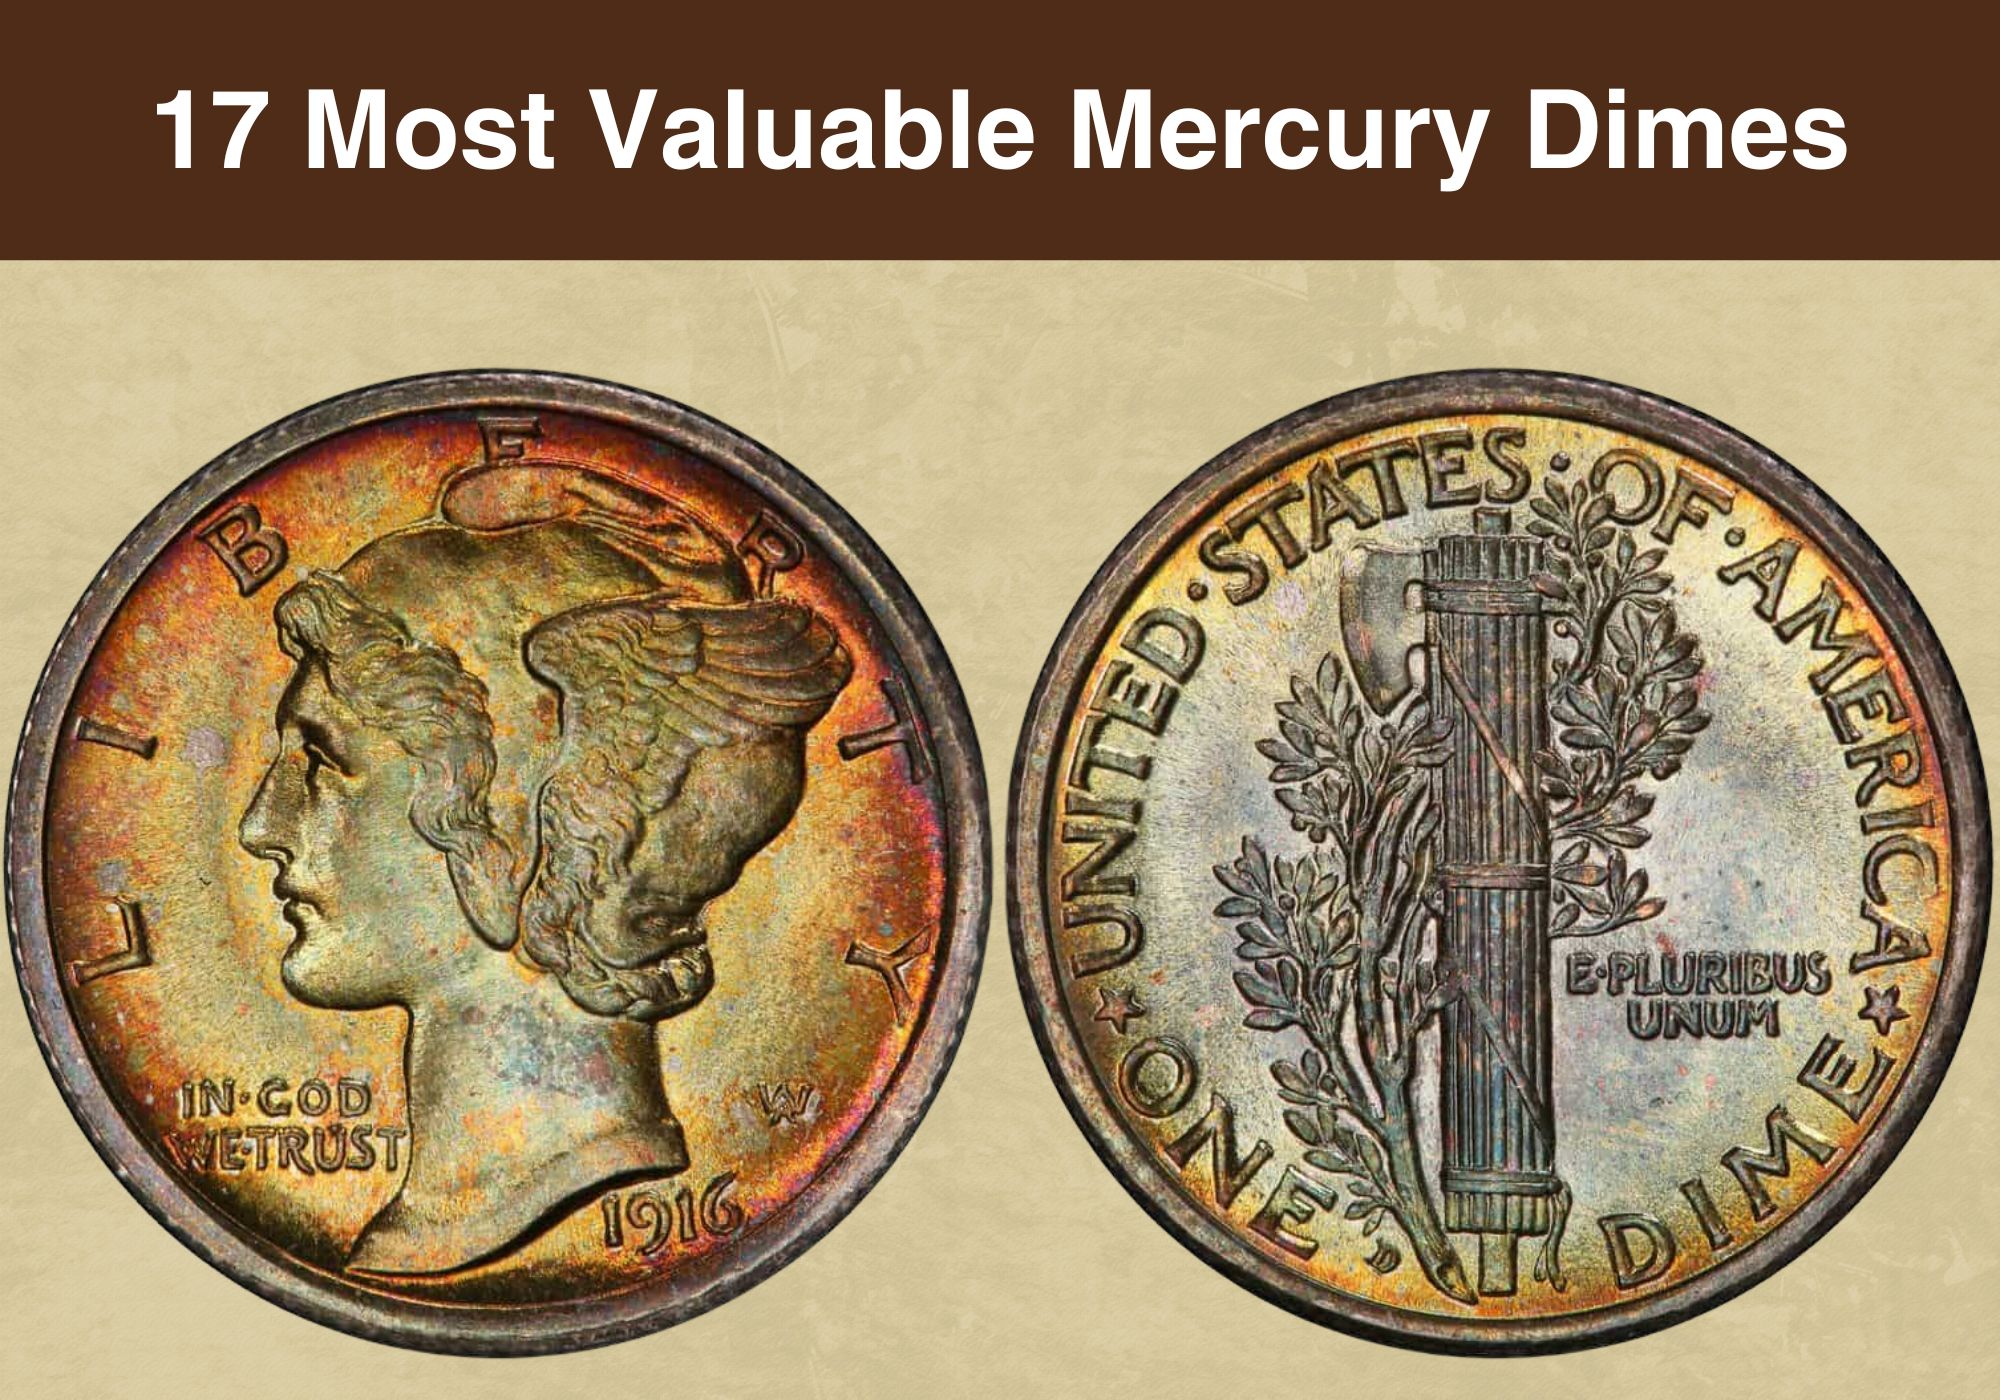 17 Most Valuable Mercury Dimes